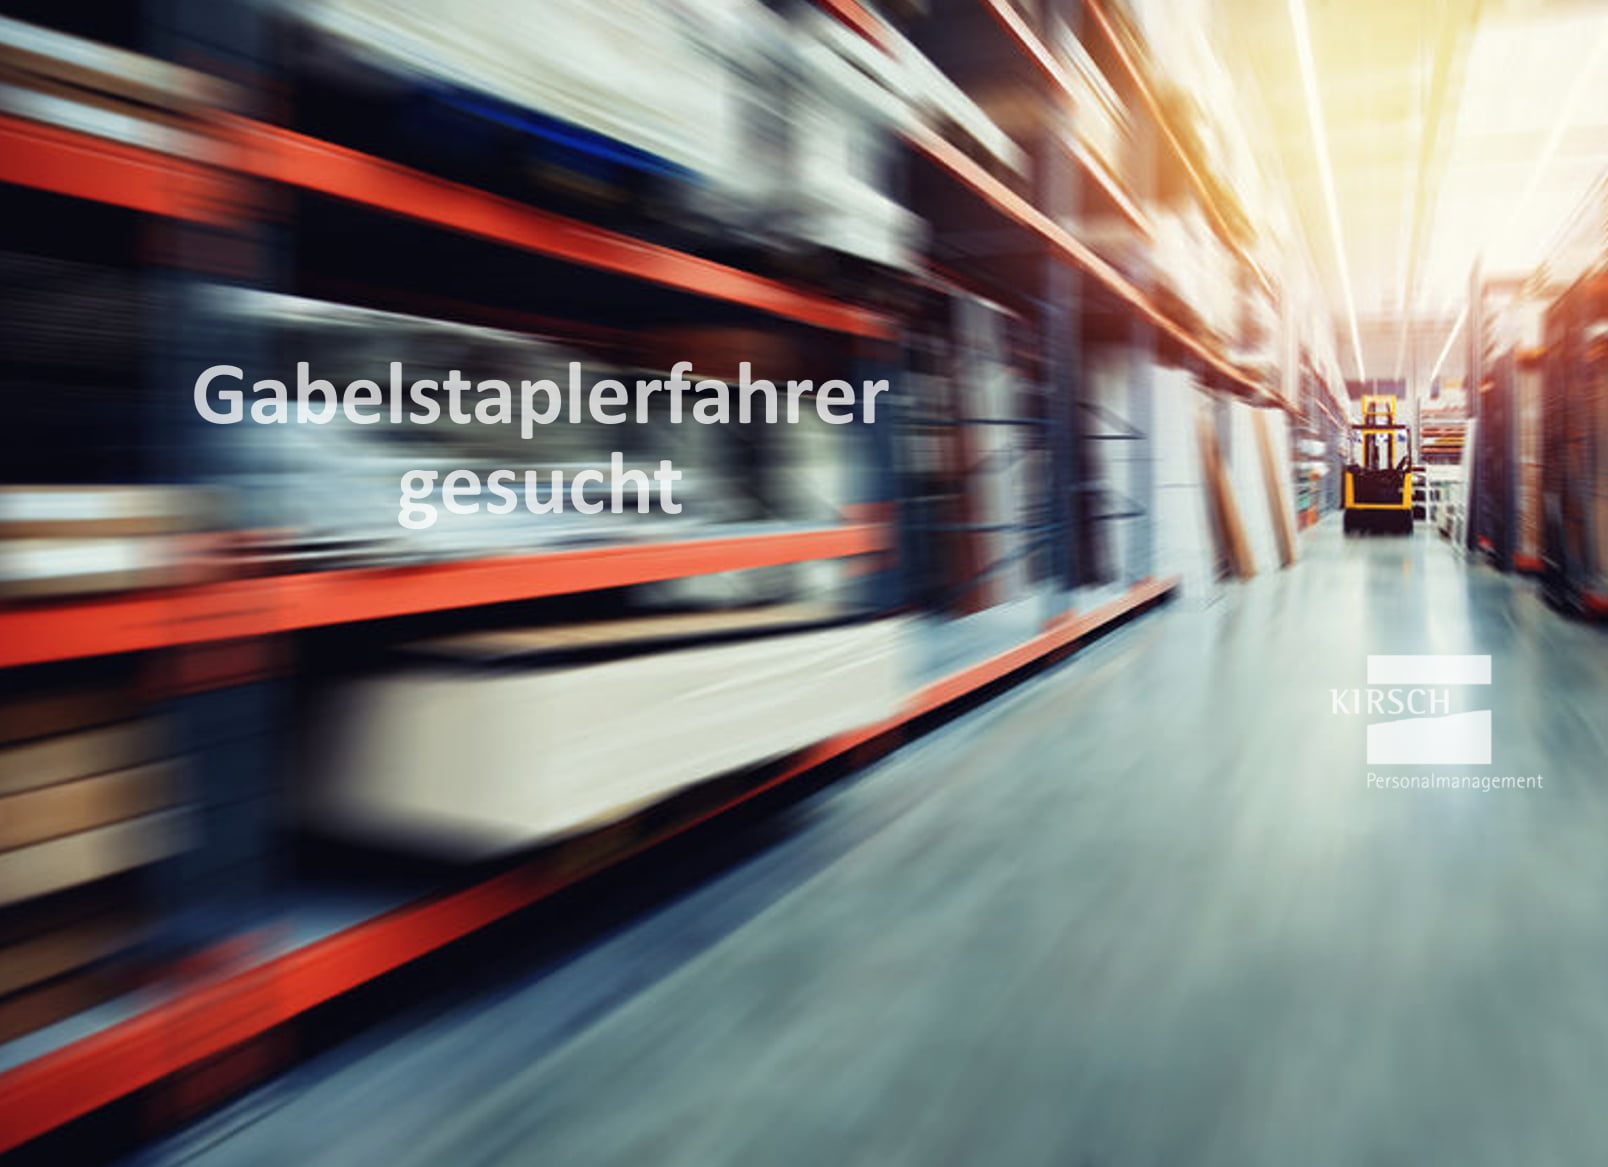 Gabelstaplerfahrer gesucht- Kirsch GmbH Personalmanagement